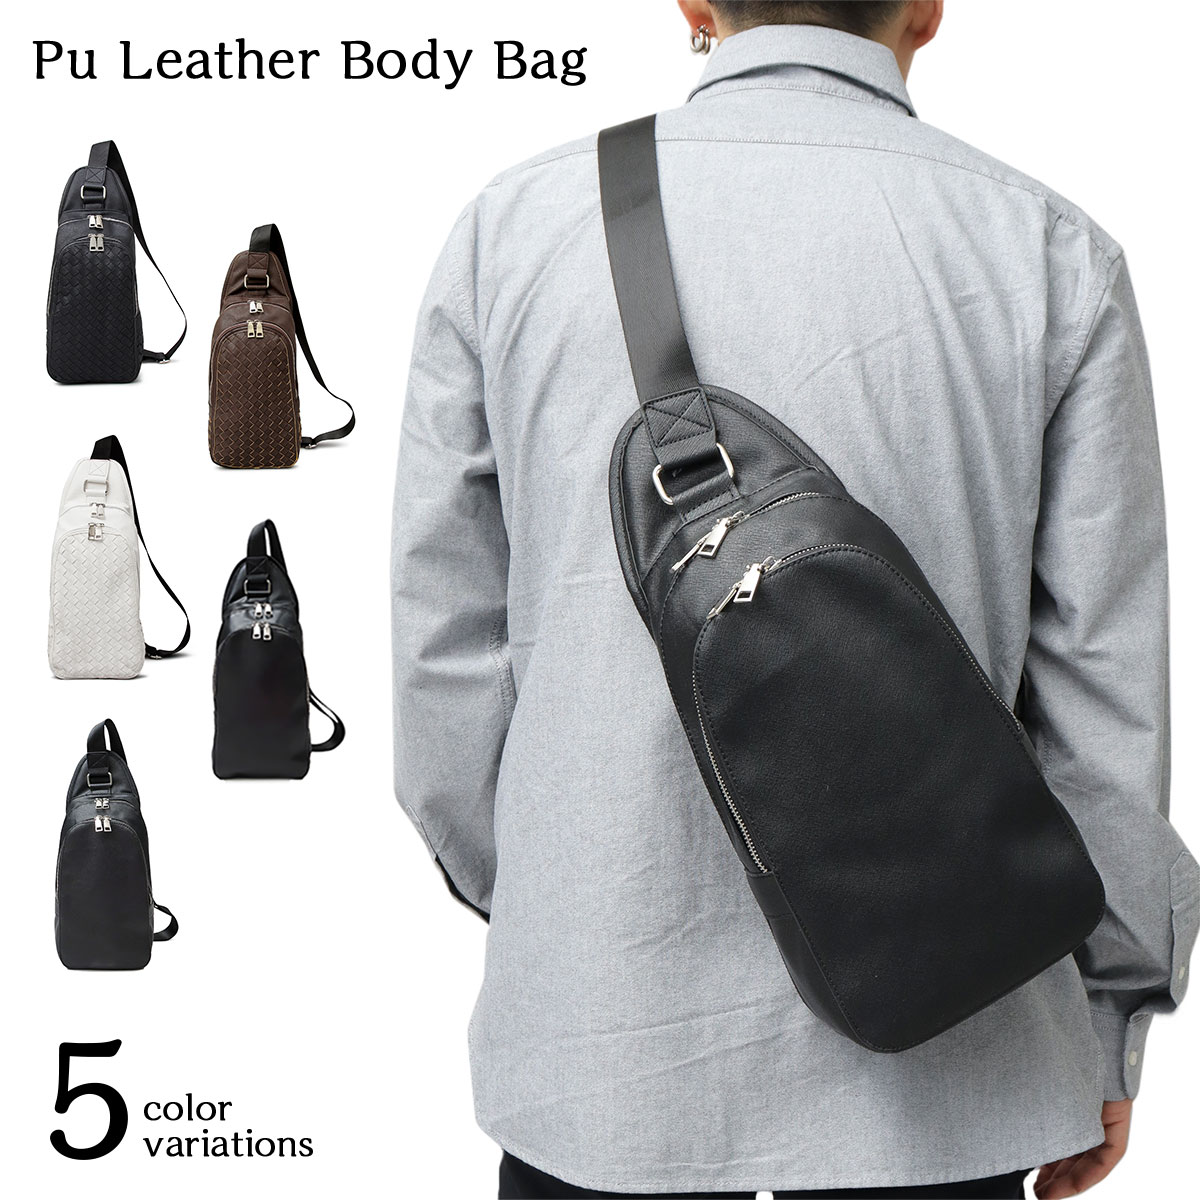 ボディバッグ イントレチャート ユニセックス オシャレ シンプル ブランド 編み込み 通勤 通学 鞄 カバン バッグ